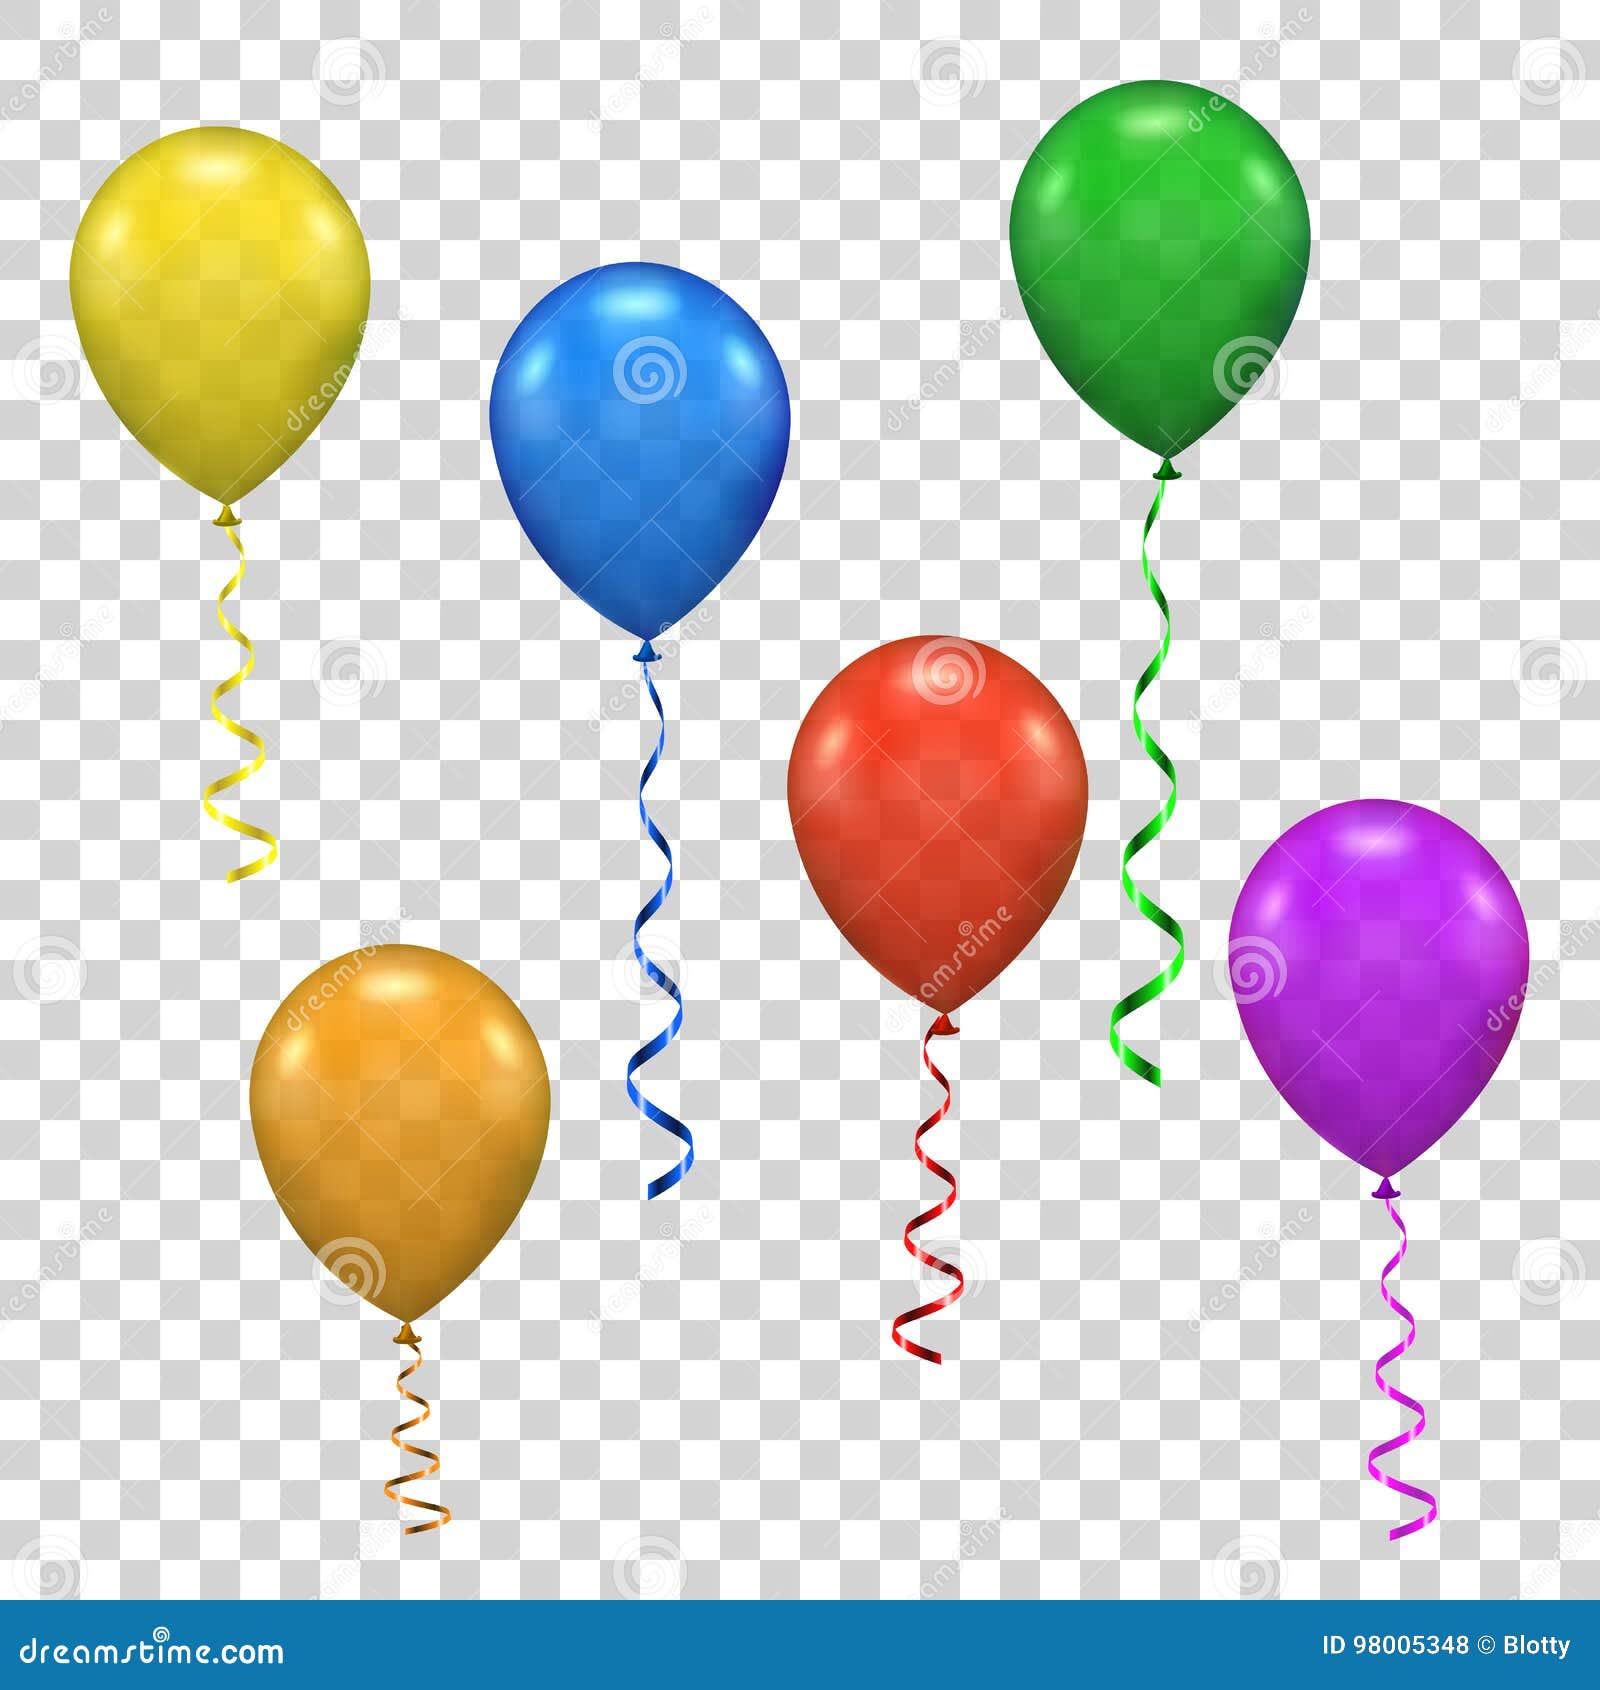  ballon for party, birthday